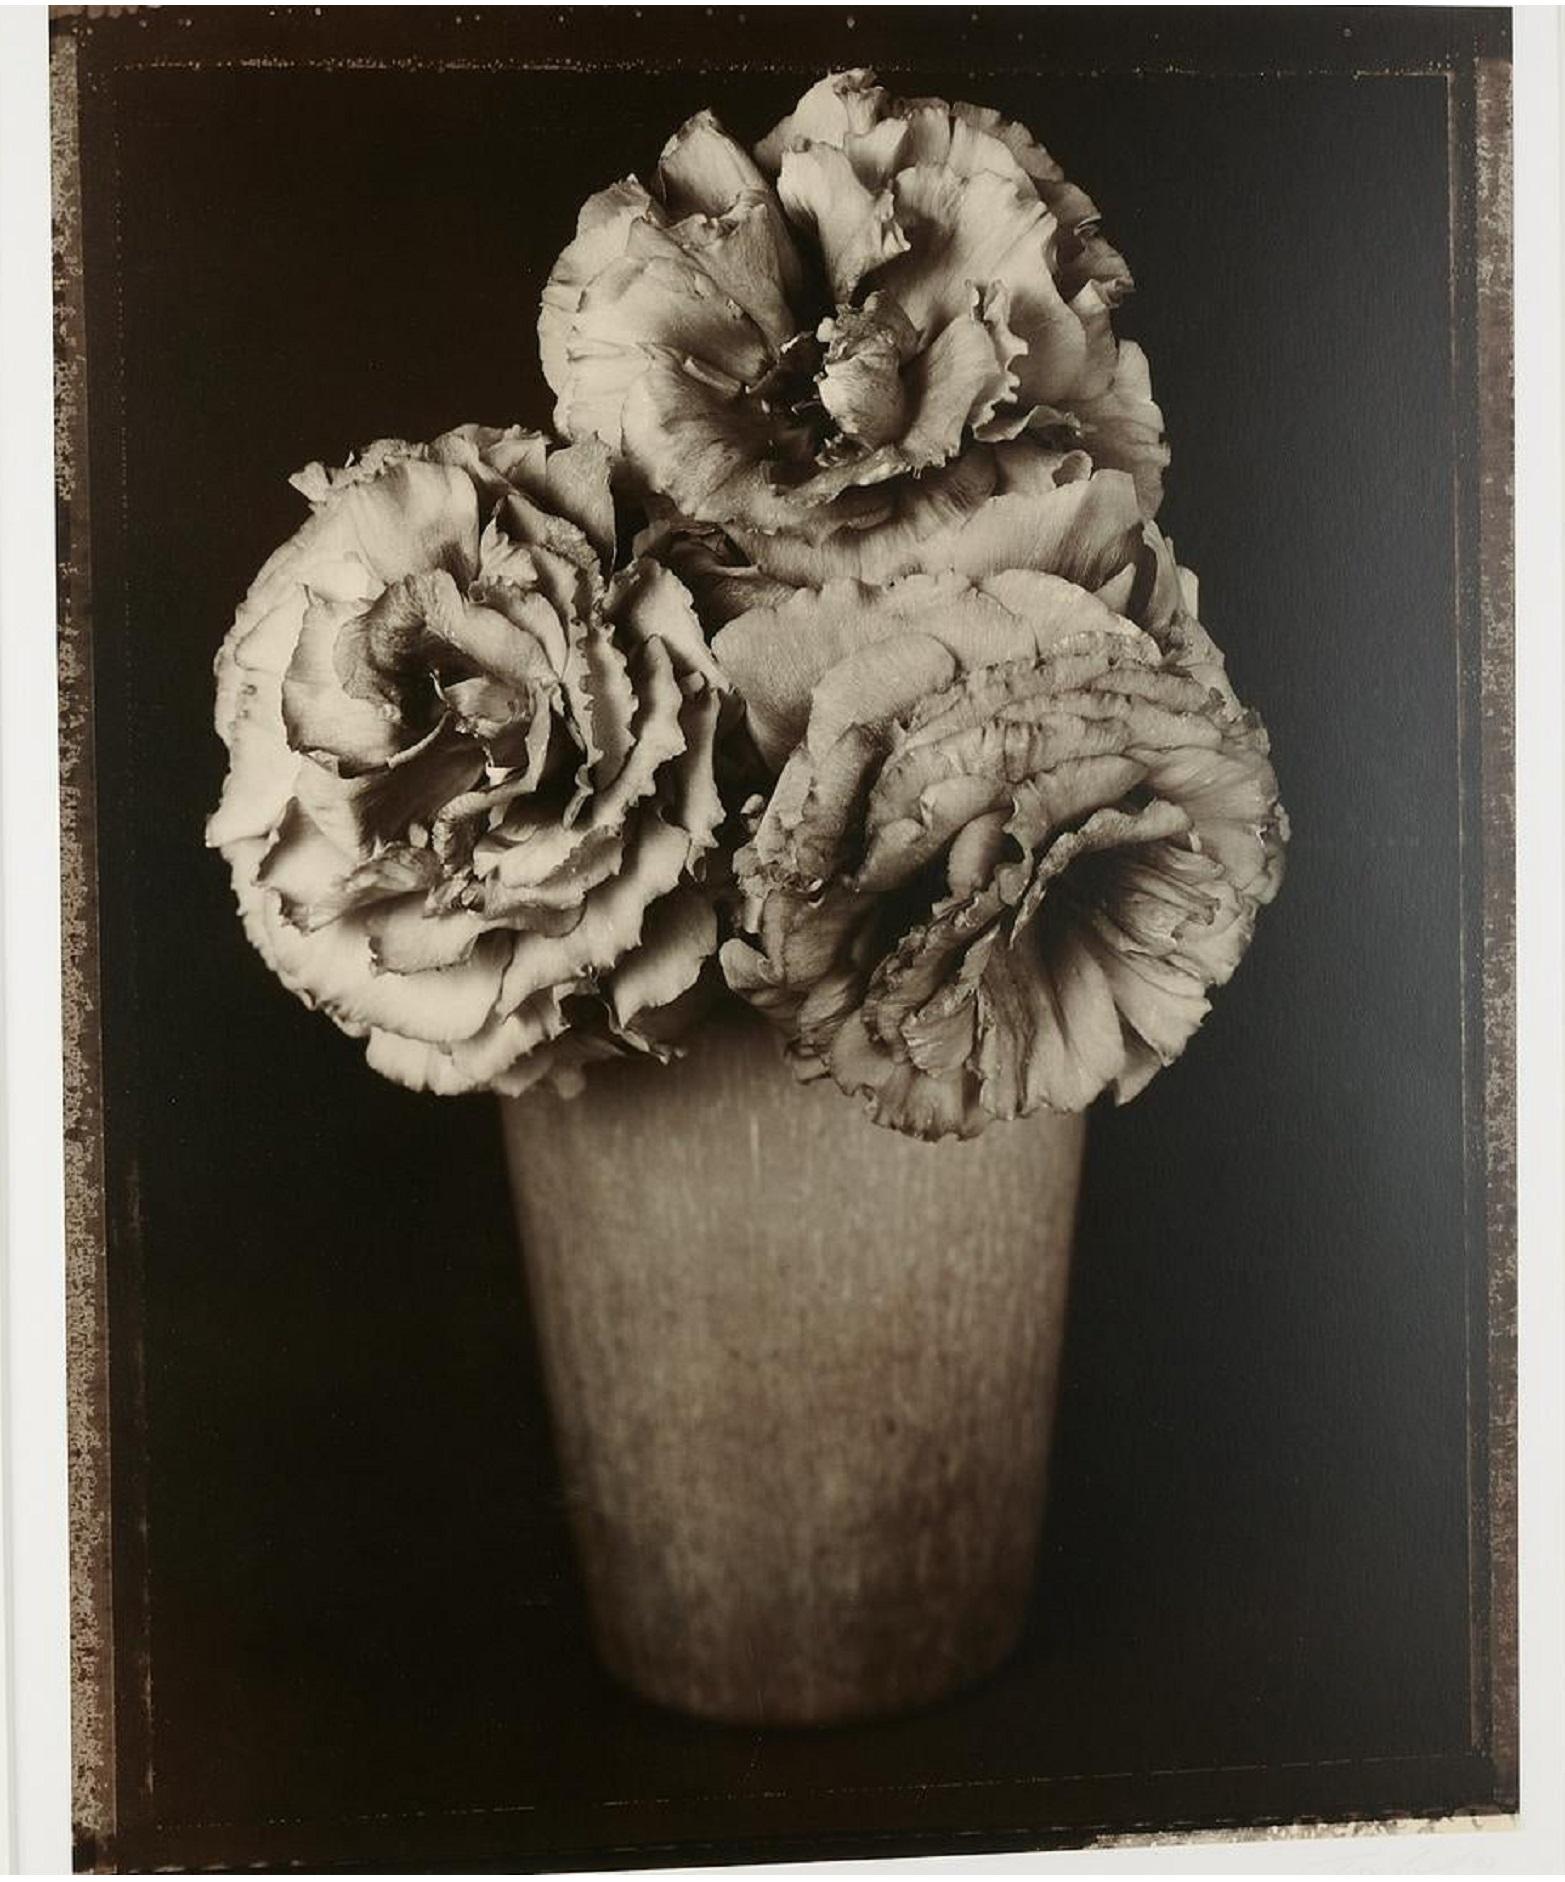 Großformatige florale Vintage-Fotografie im Vintage-Stil, Schwarz-Weiß-Silber, Gelatin, Tom Baril